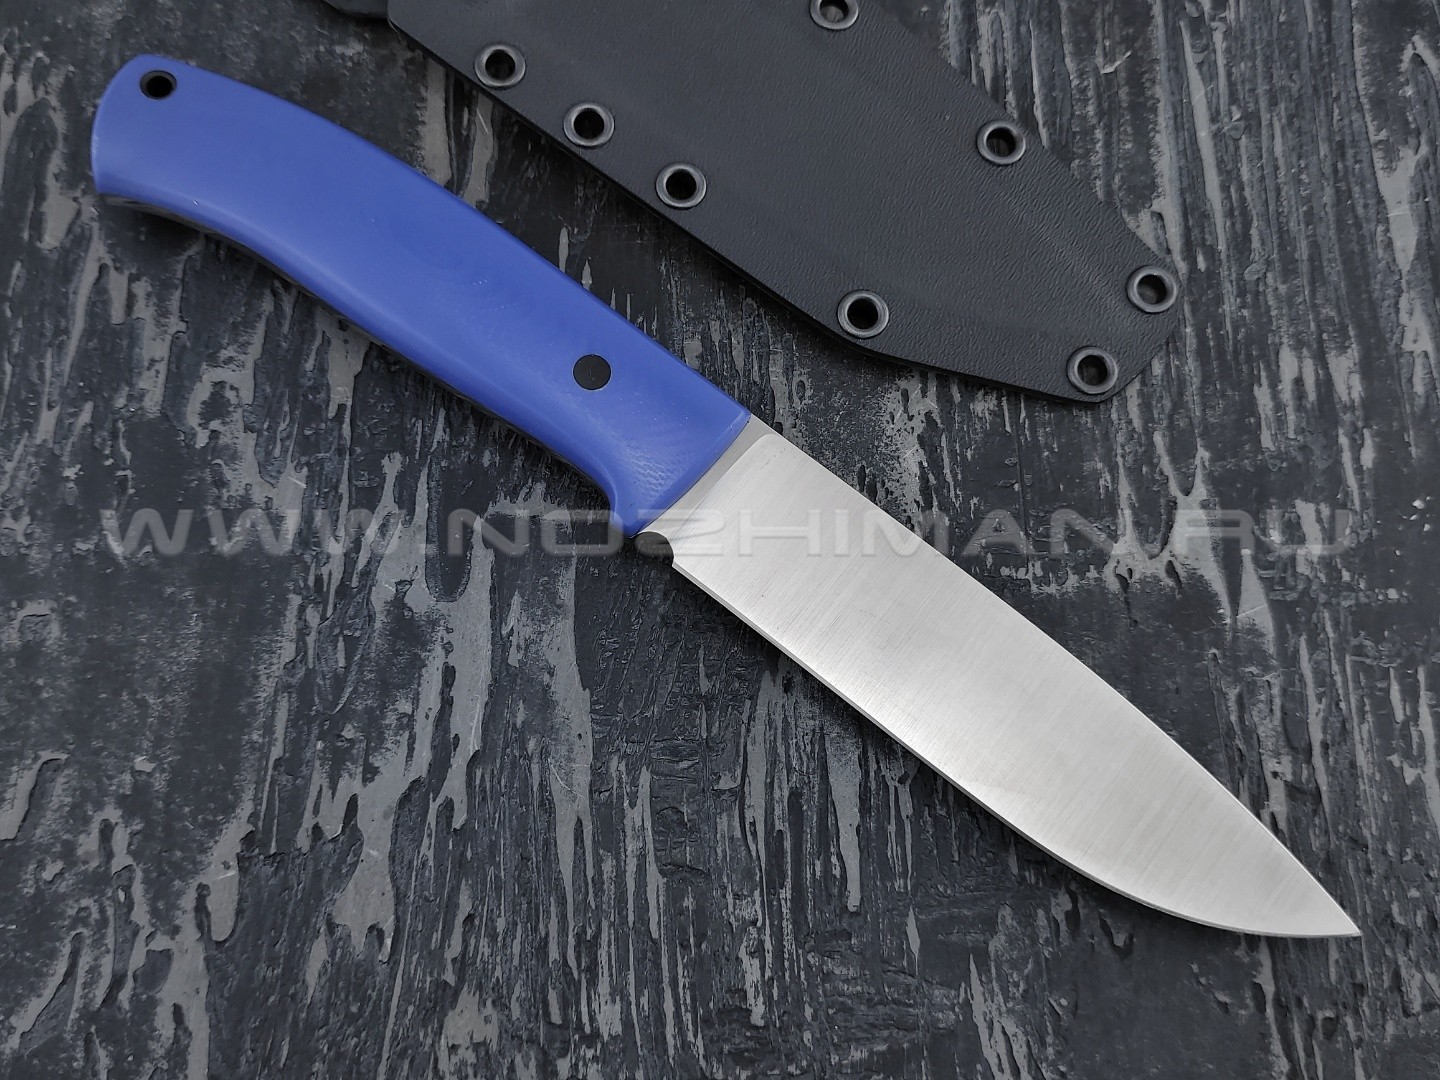 Apus Knives нож Destruktor сталь N690, рукоять G10 blue